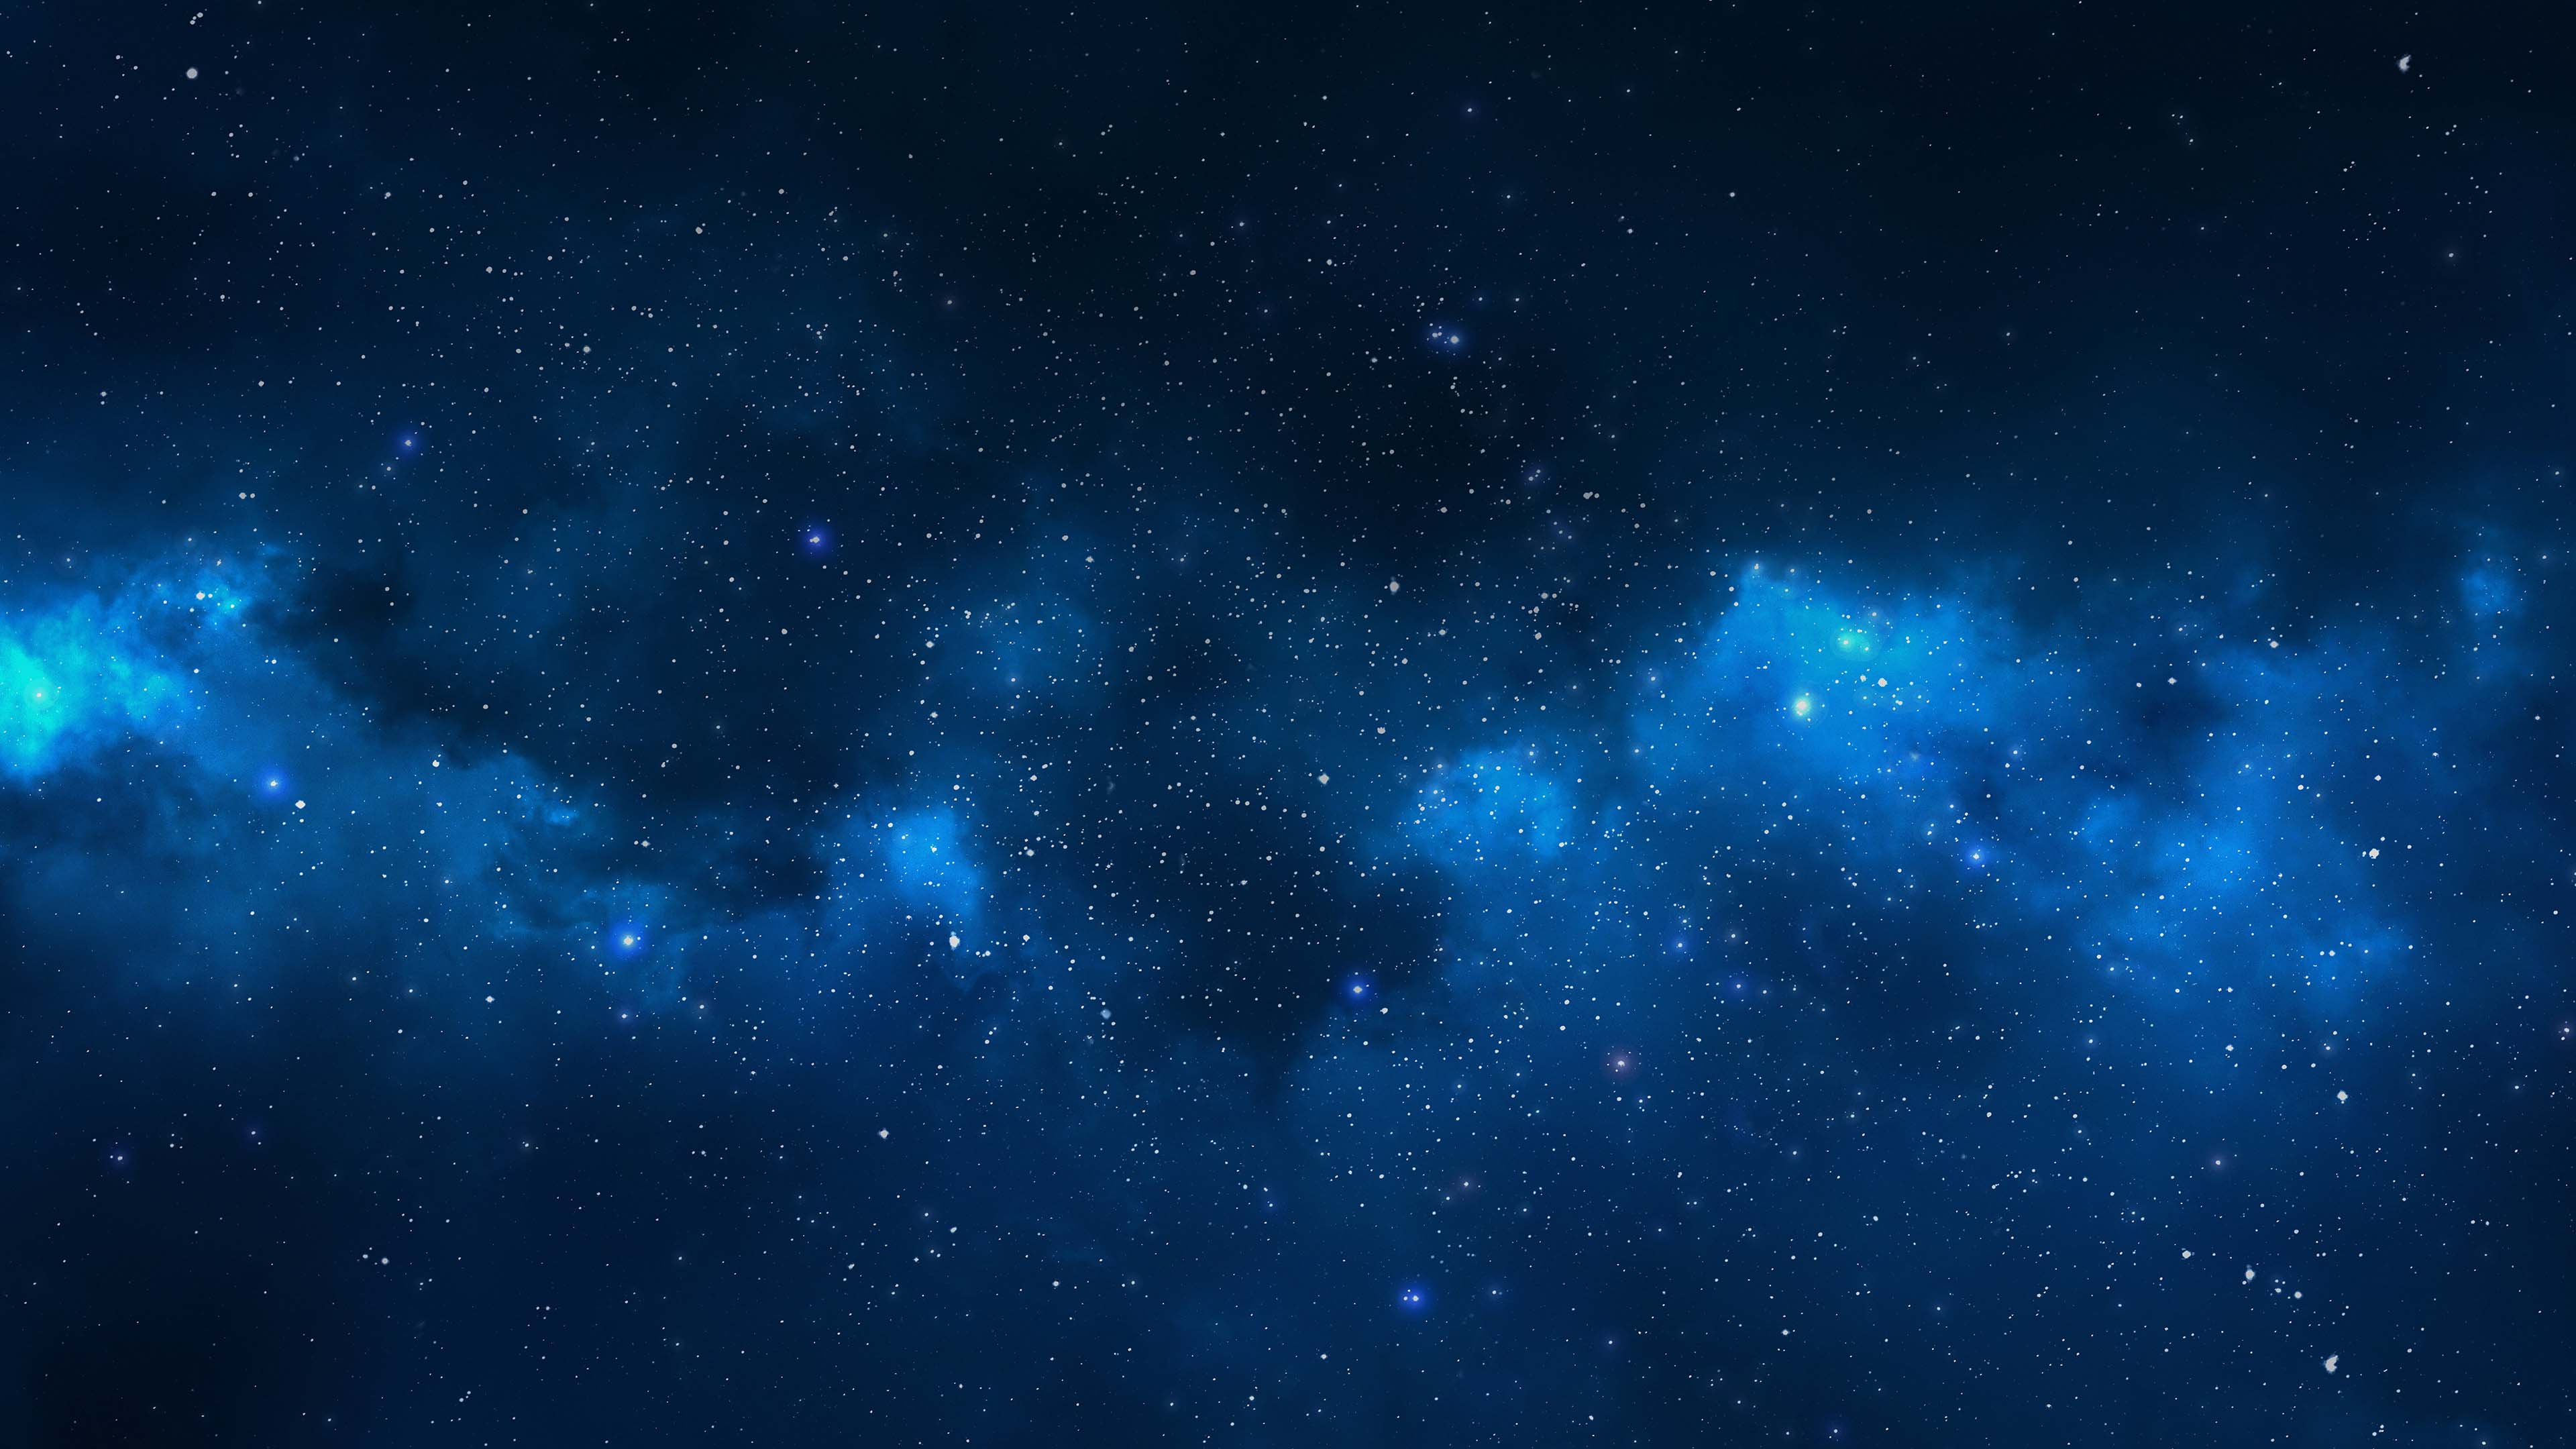 Hãy đưa chút vũ trụ vào không gian máy tính của bạn với những bức hình nền wallpaper galaxy đầy màu sắc và bí ẩn. Cùng khám phá và chọn lựa những hình ảnh đẹp nhất, giúp cho chiếc máy tính của bạn trở nên lung linh và độc đáo hơn.